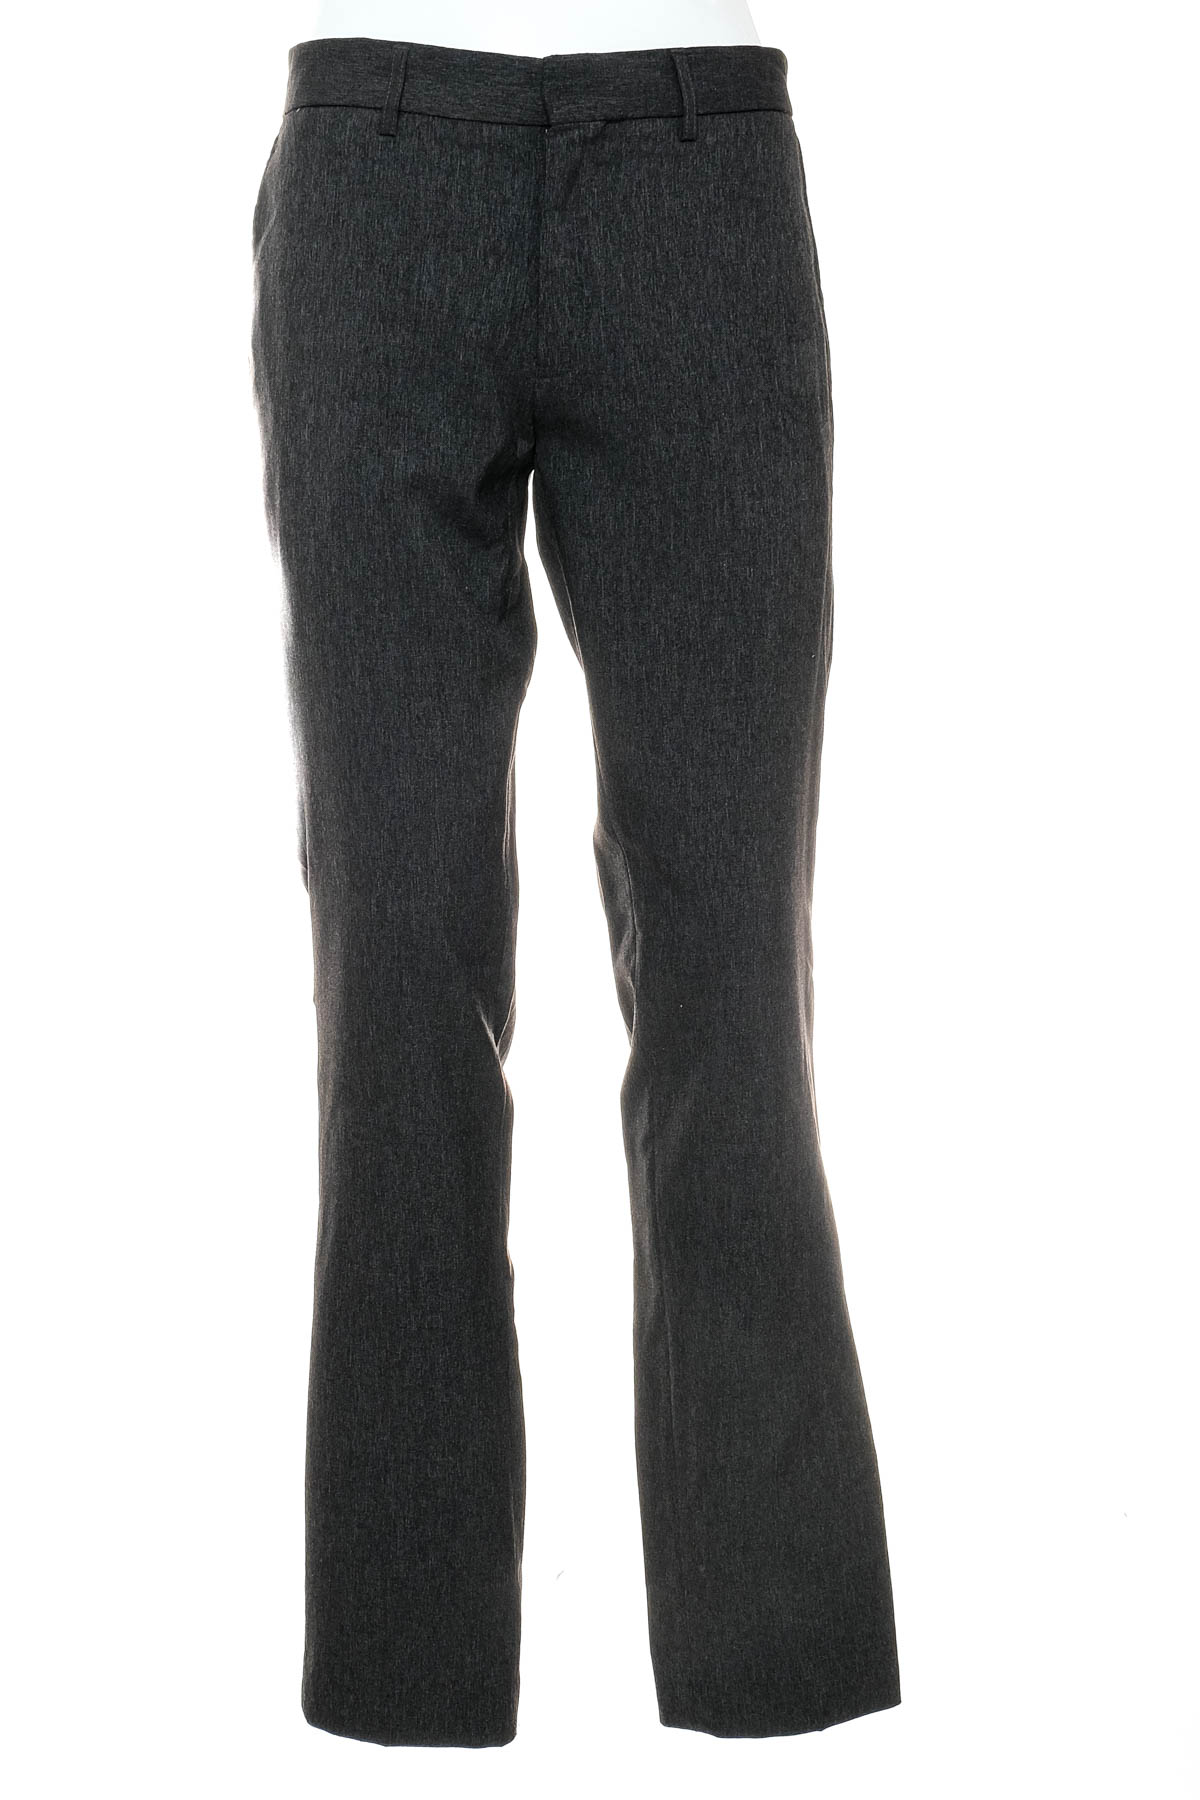 Men's trousers - Target - 0